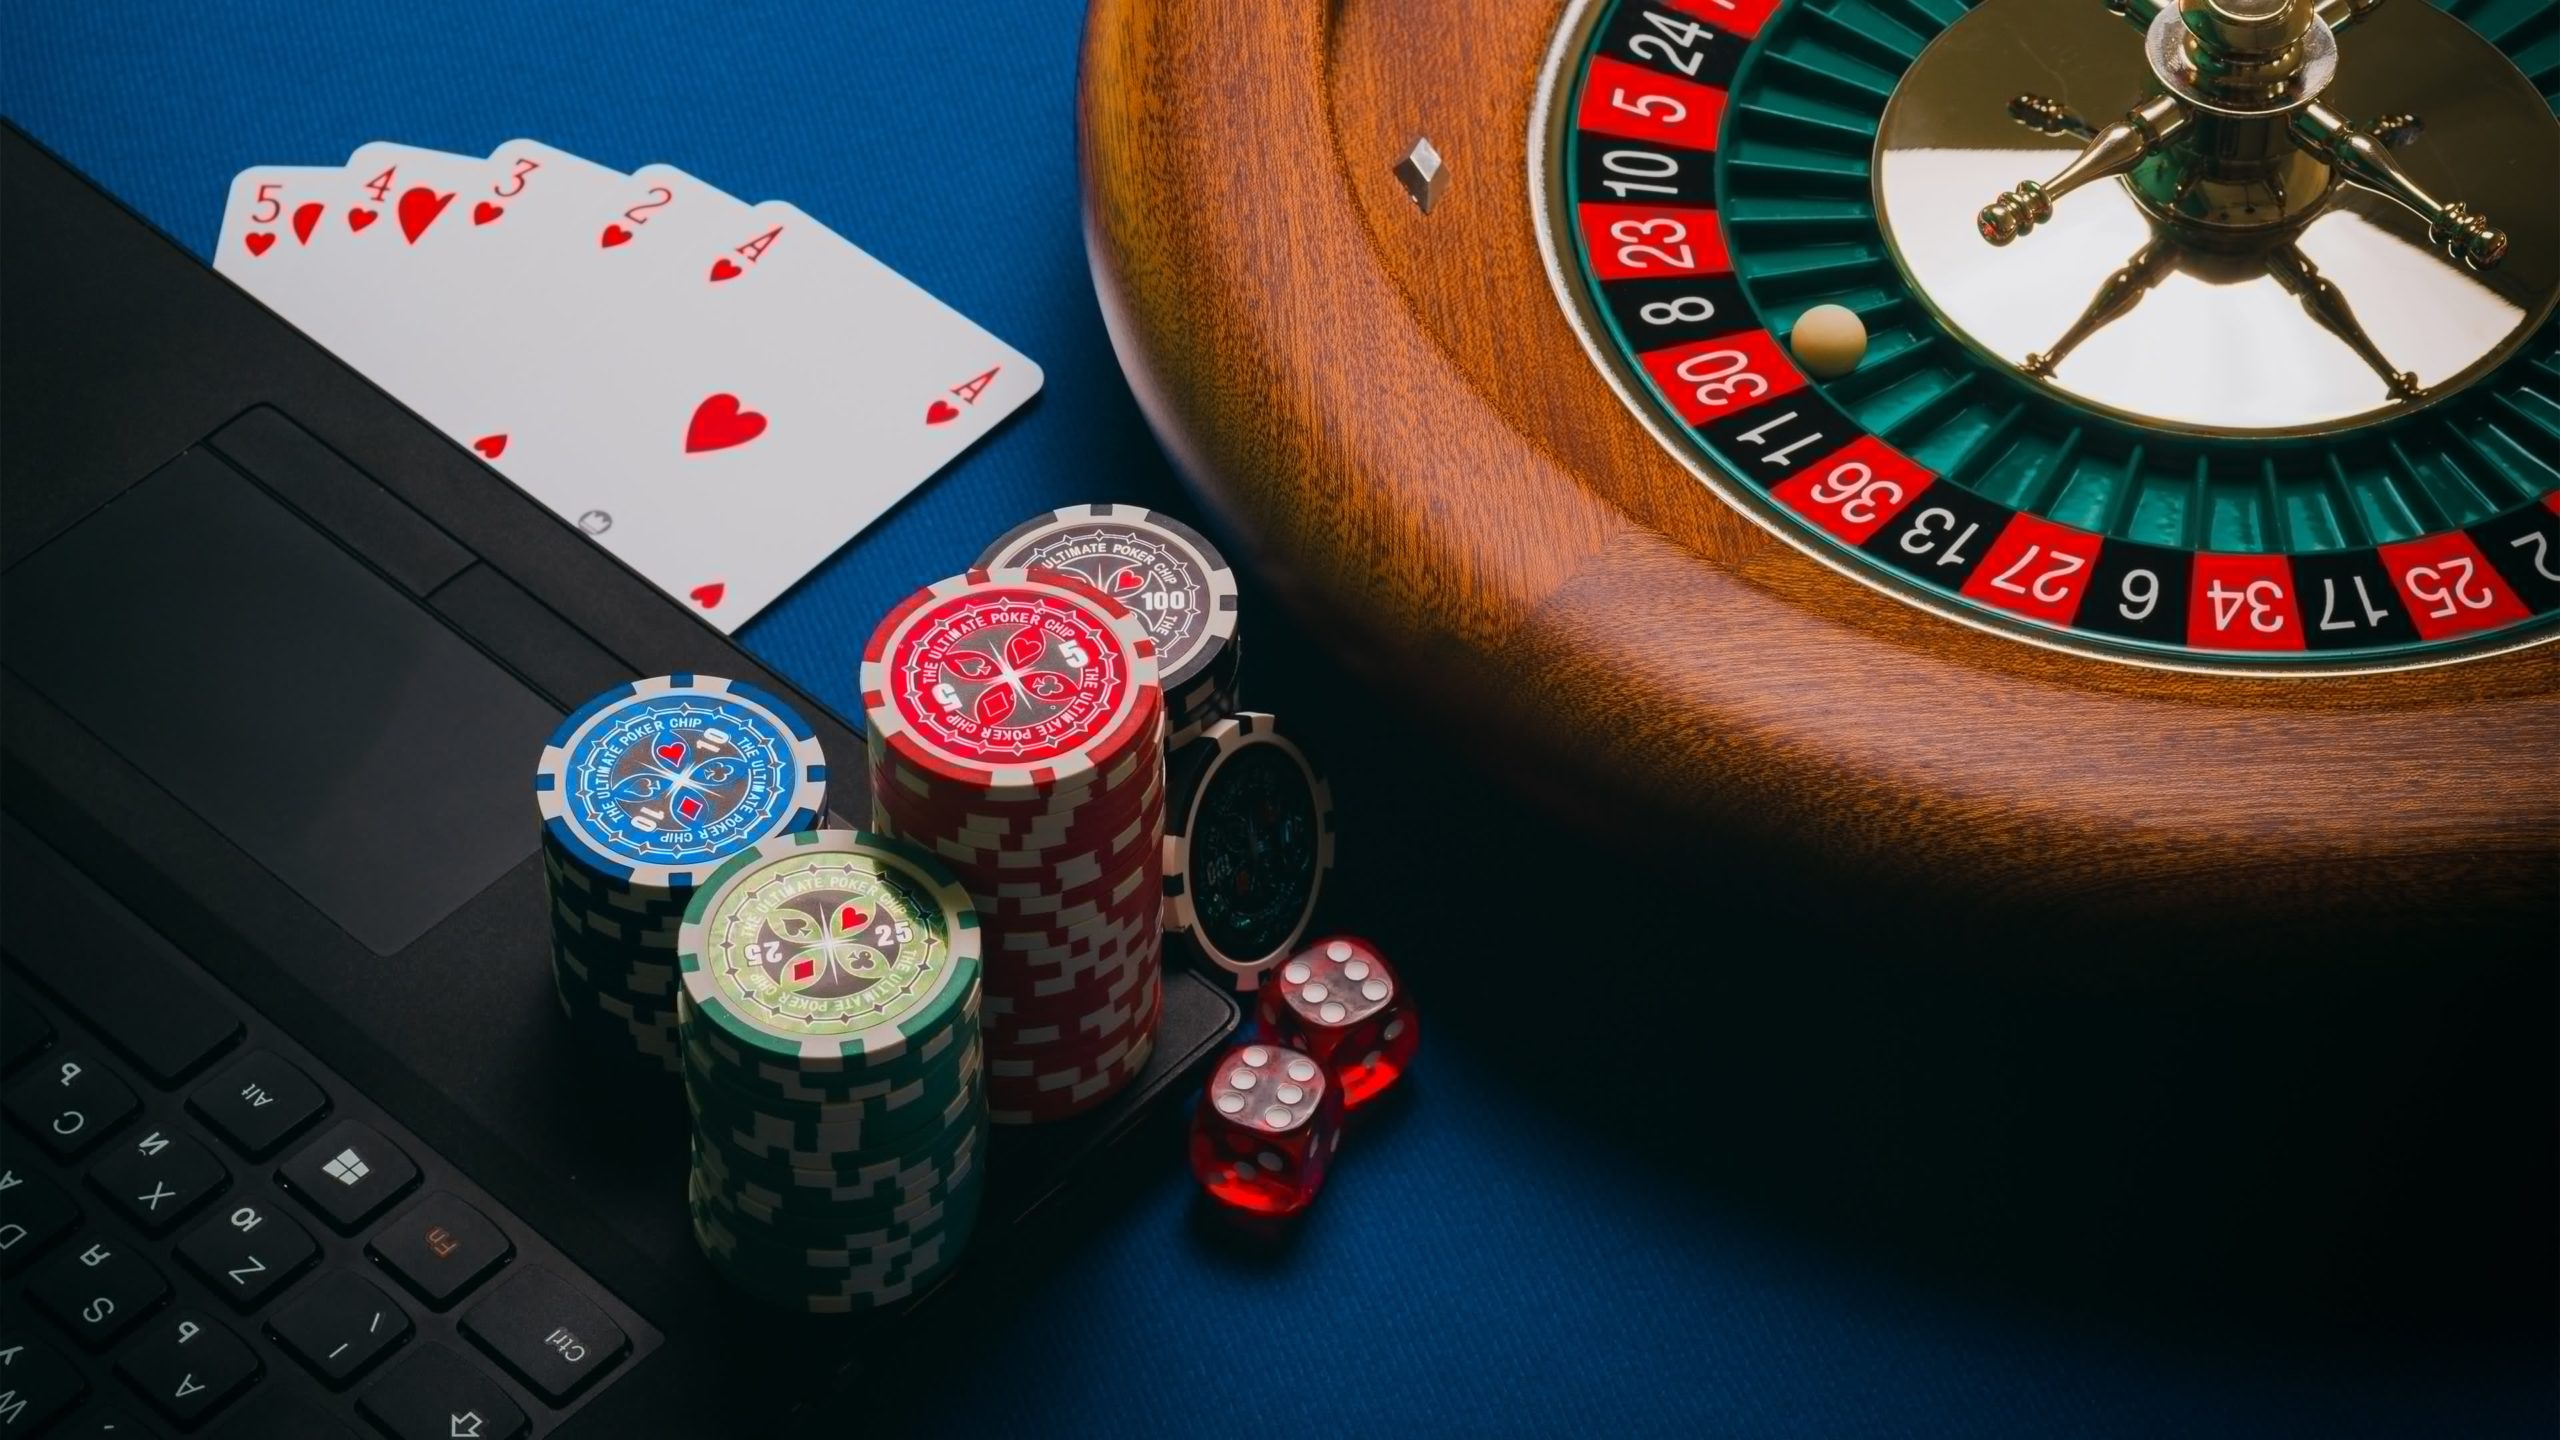 Las 3 formas realmente obvias de jugar en el casino en línea mejor que nunca